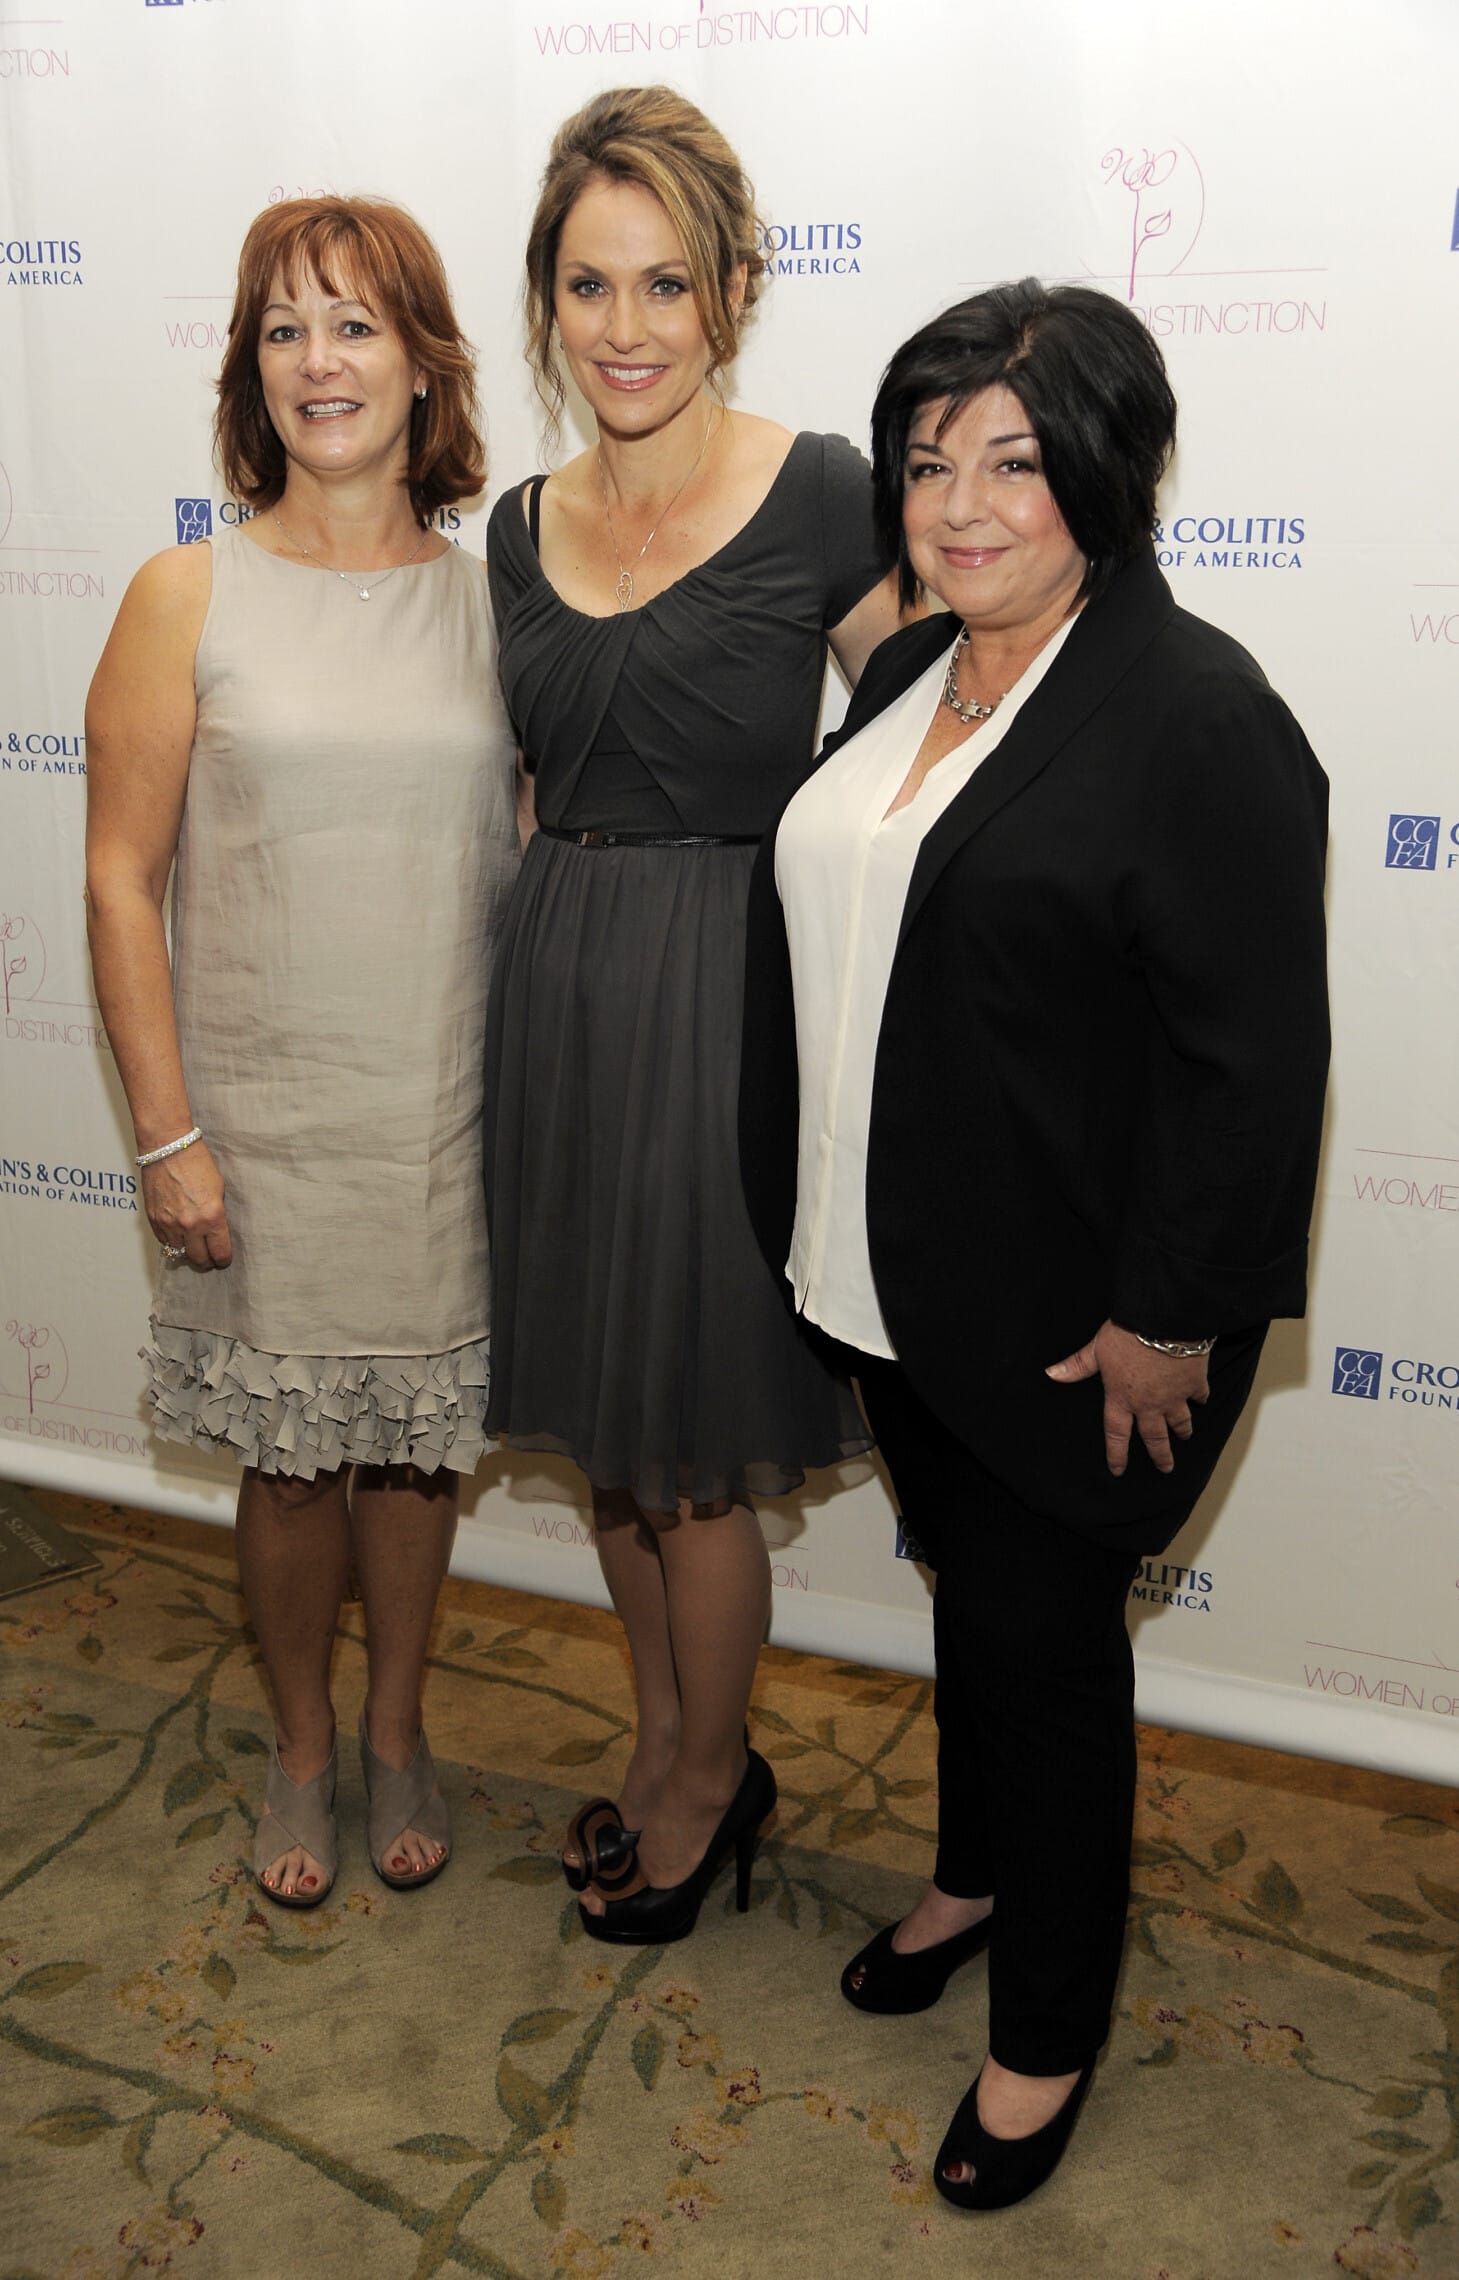 ליסה גריר, משמאל, איימי ברננמן במרז וסוזן קרטסוניס מימין בארוע בבוורלי הילס במאי 2013 (צילום: Chris Pizzello/Invision/AP)